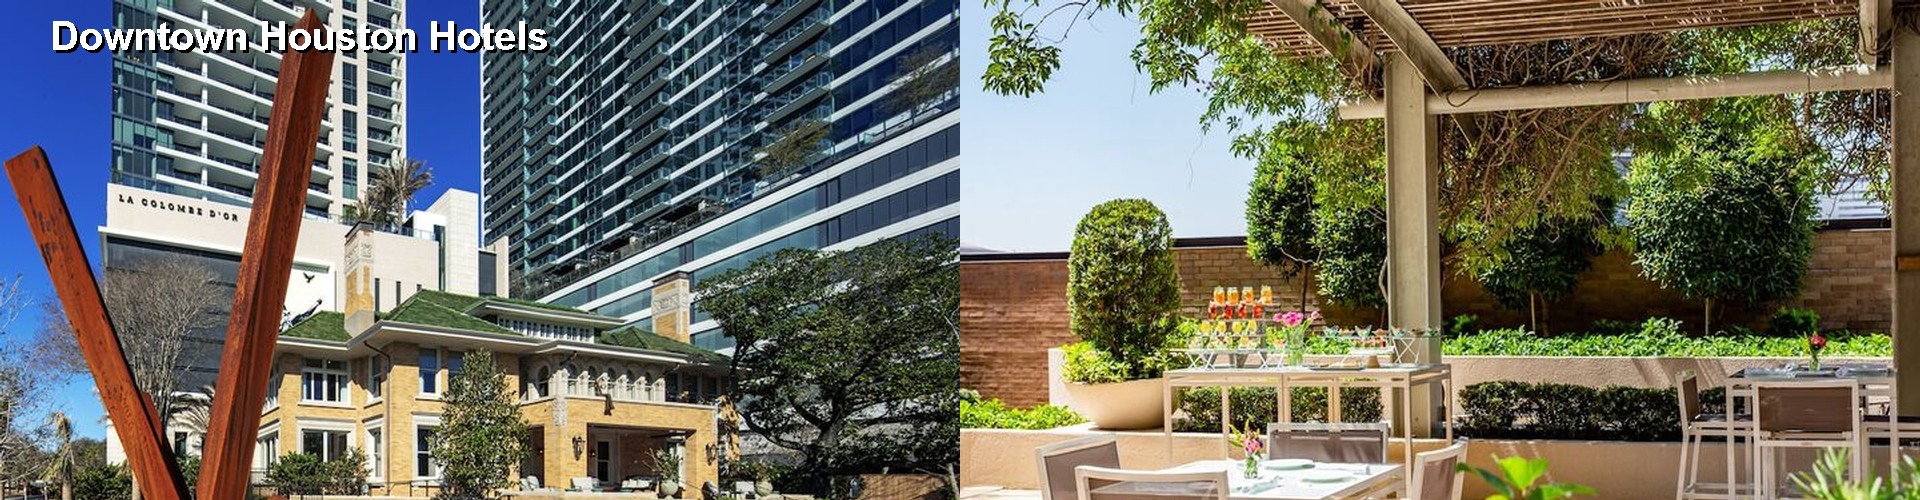 5 Best Hotels near Downtown Houston